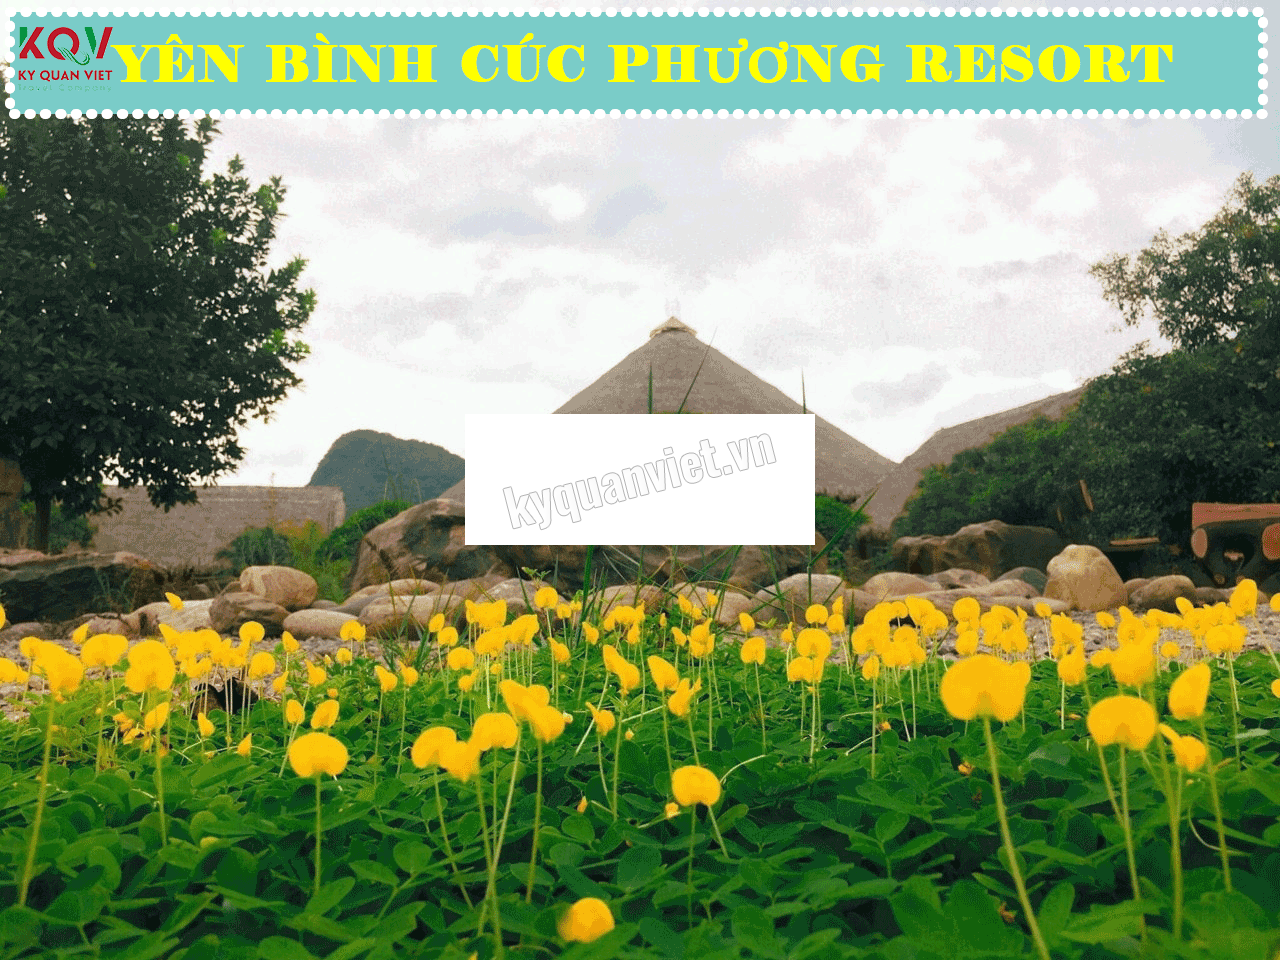 Cúc Phương Resort [TOP Resort Nổi Tiếng Gần Hà Nội]